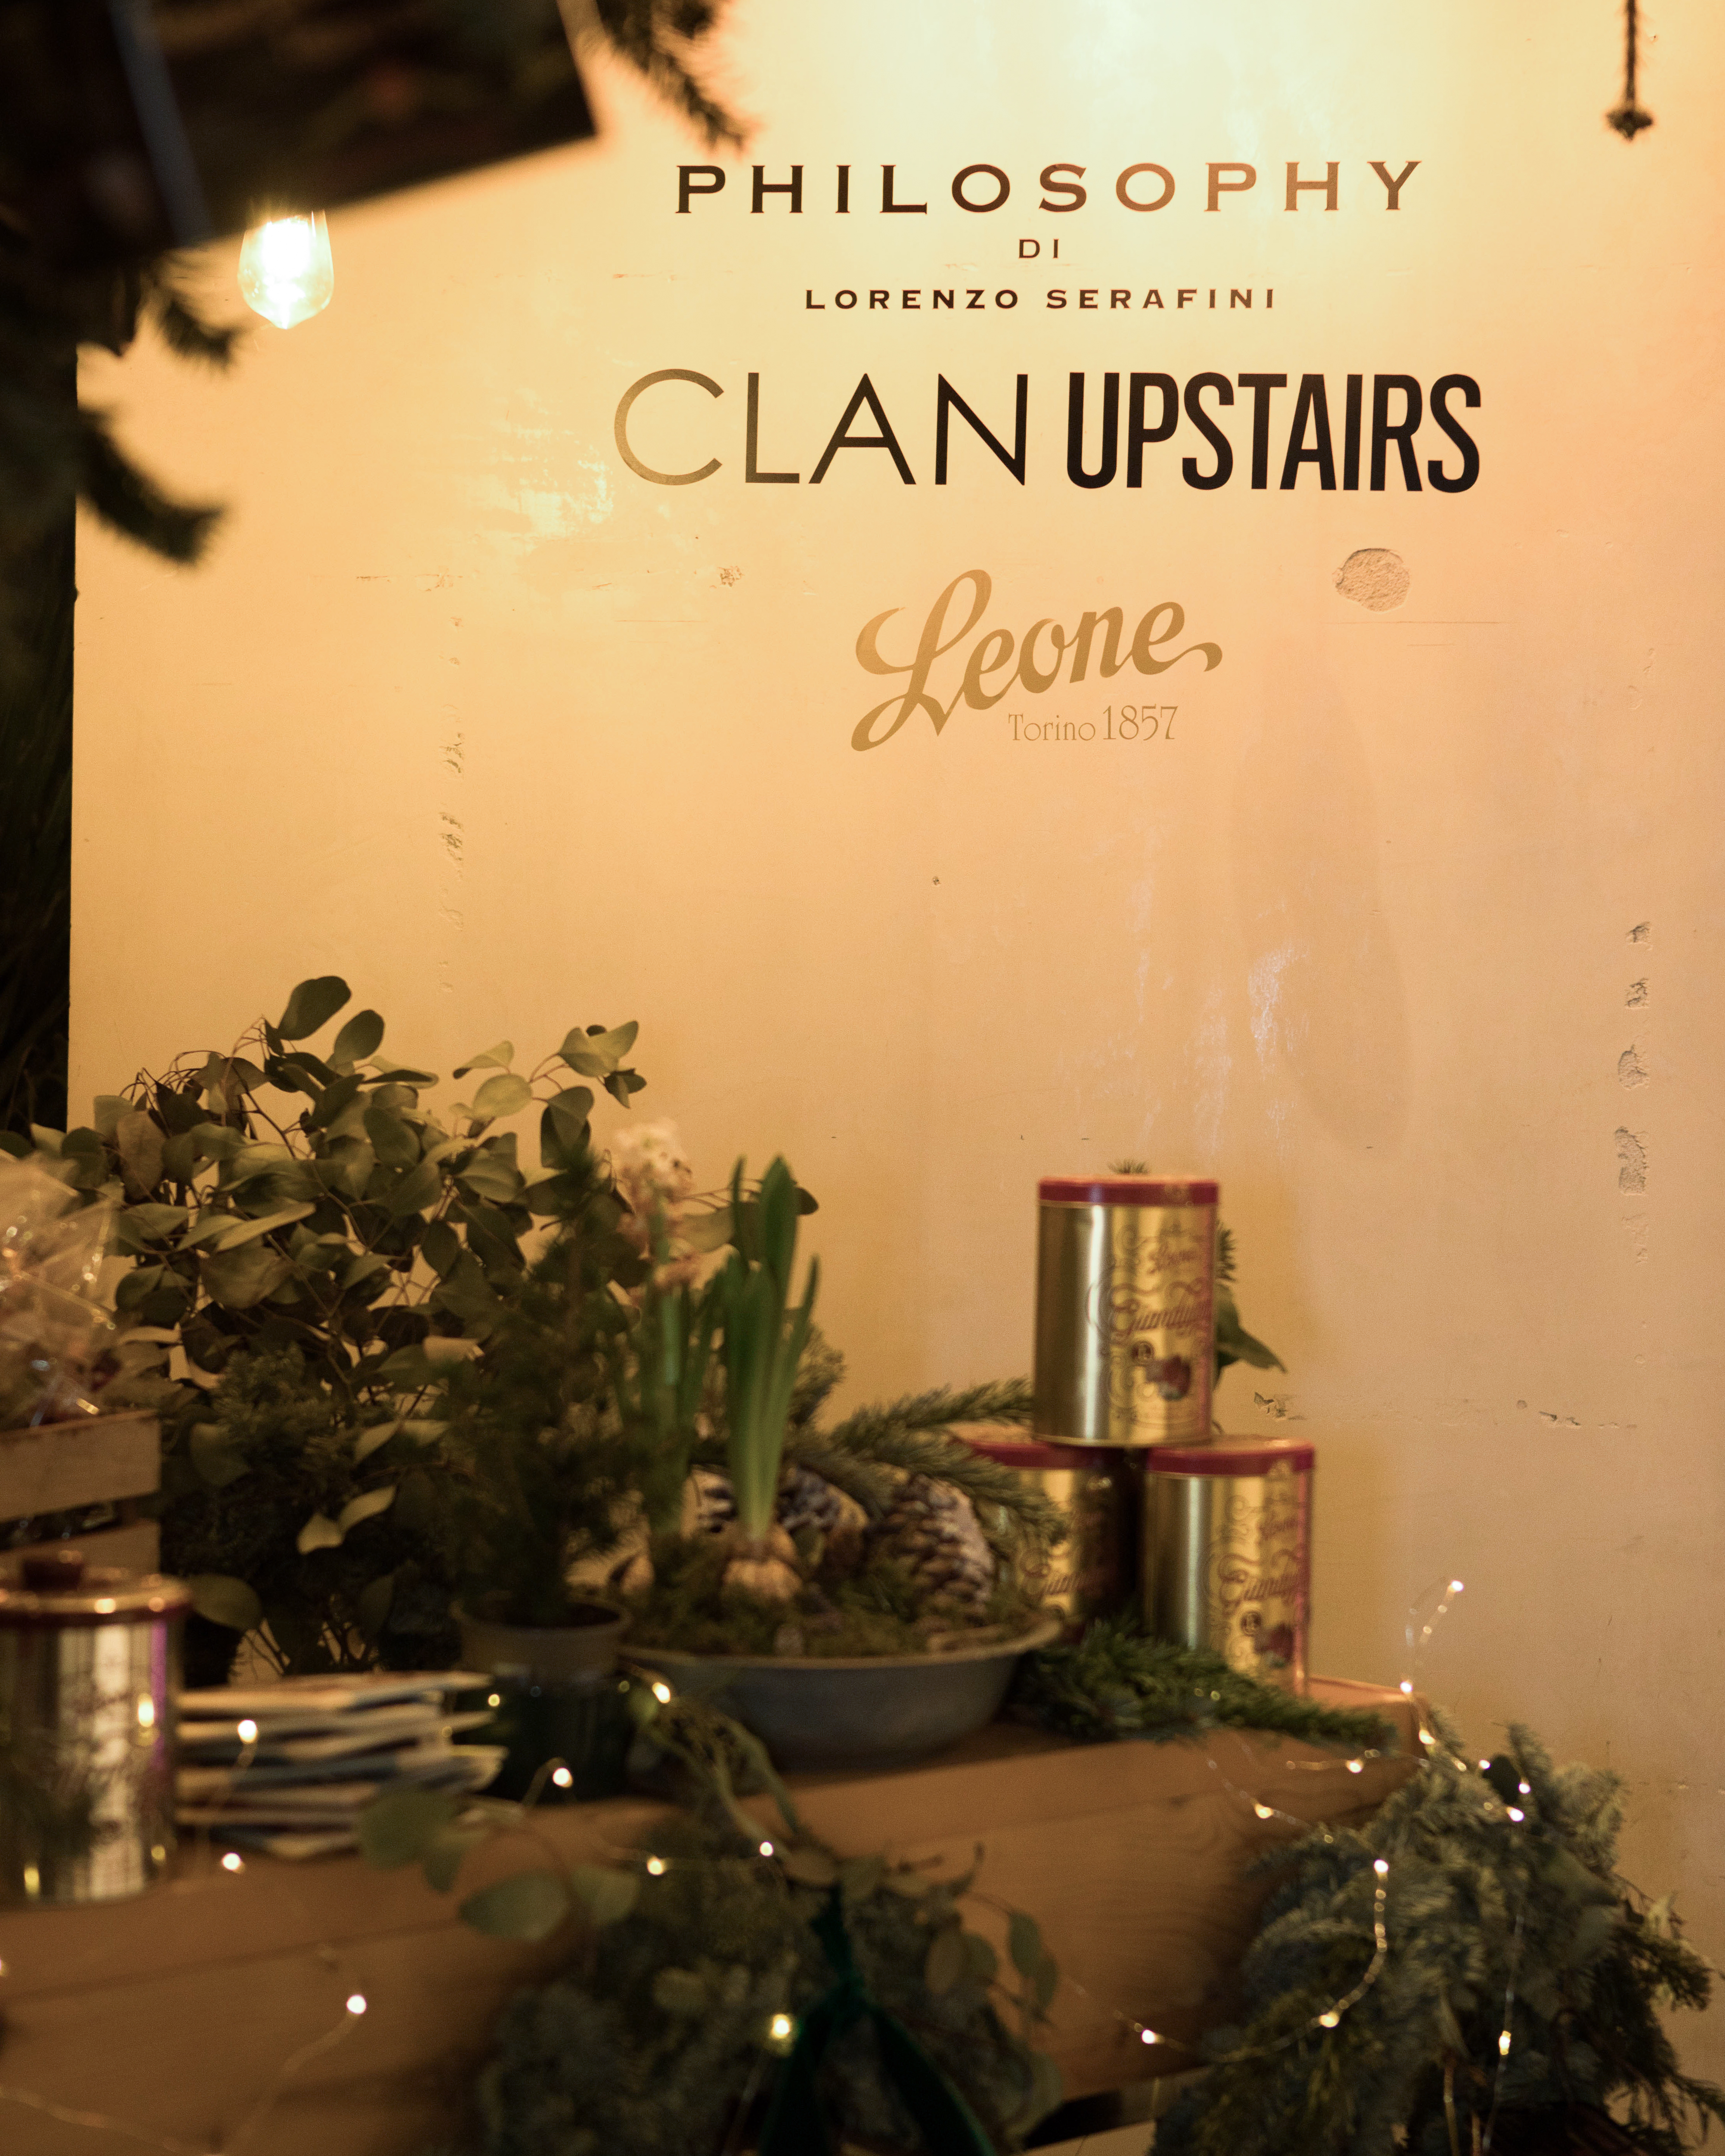 Clan Upstairs meets Philosophy_IG Carousel_2.jpg